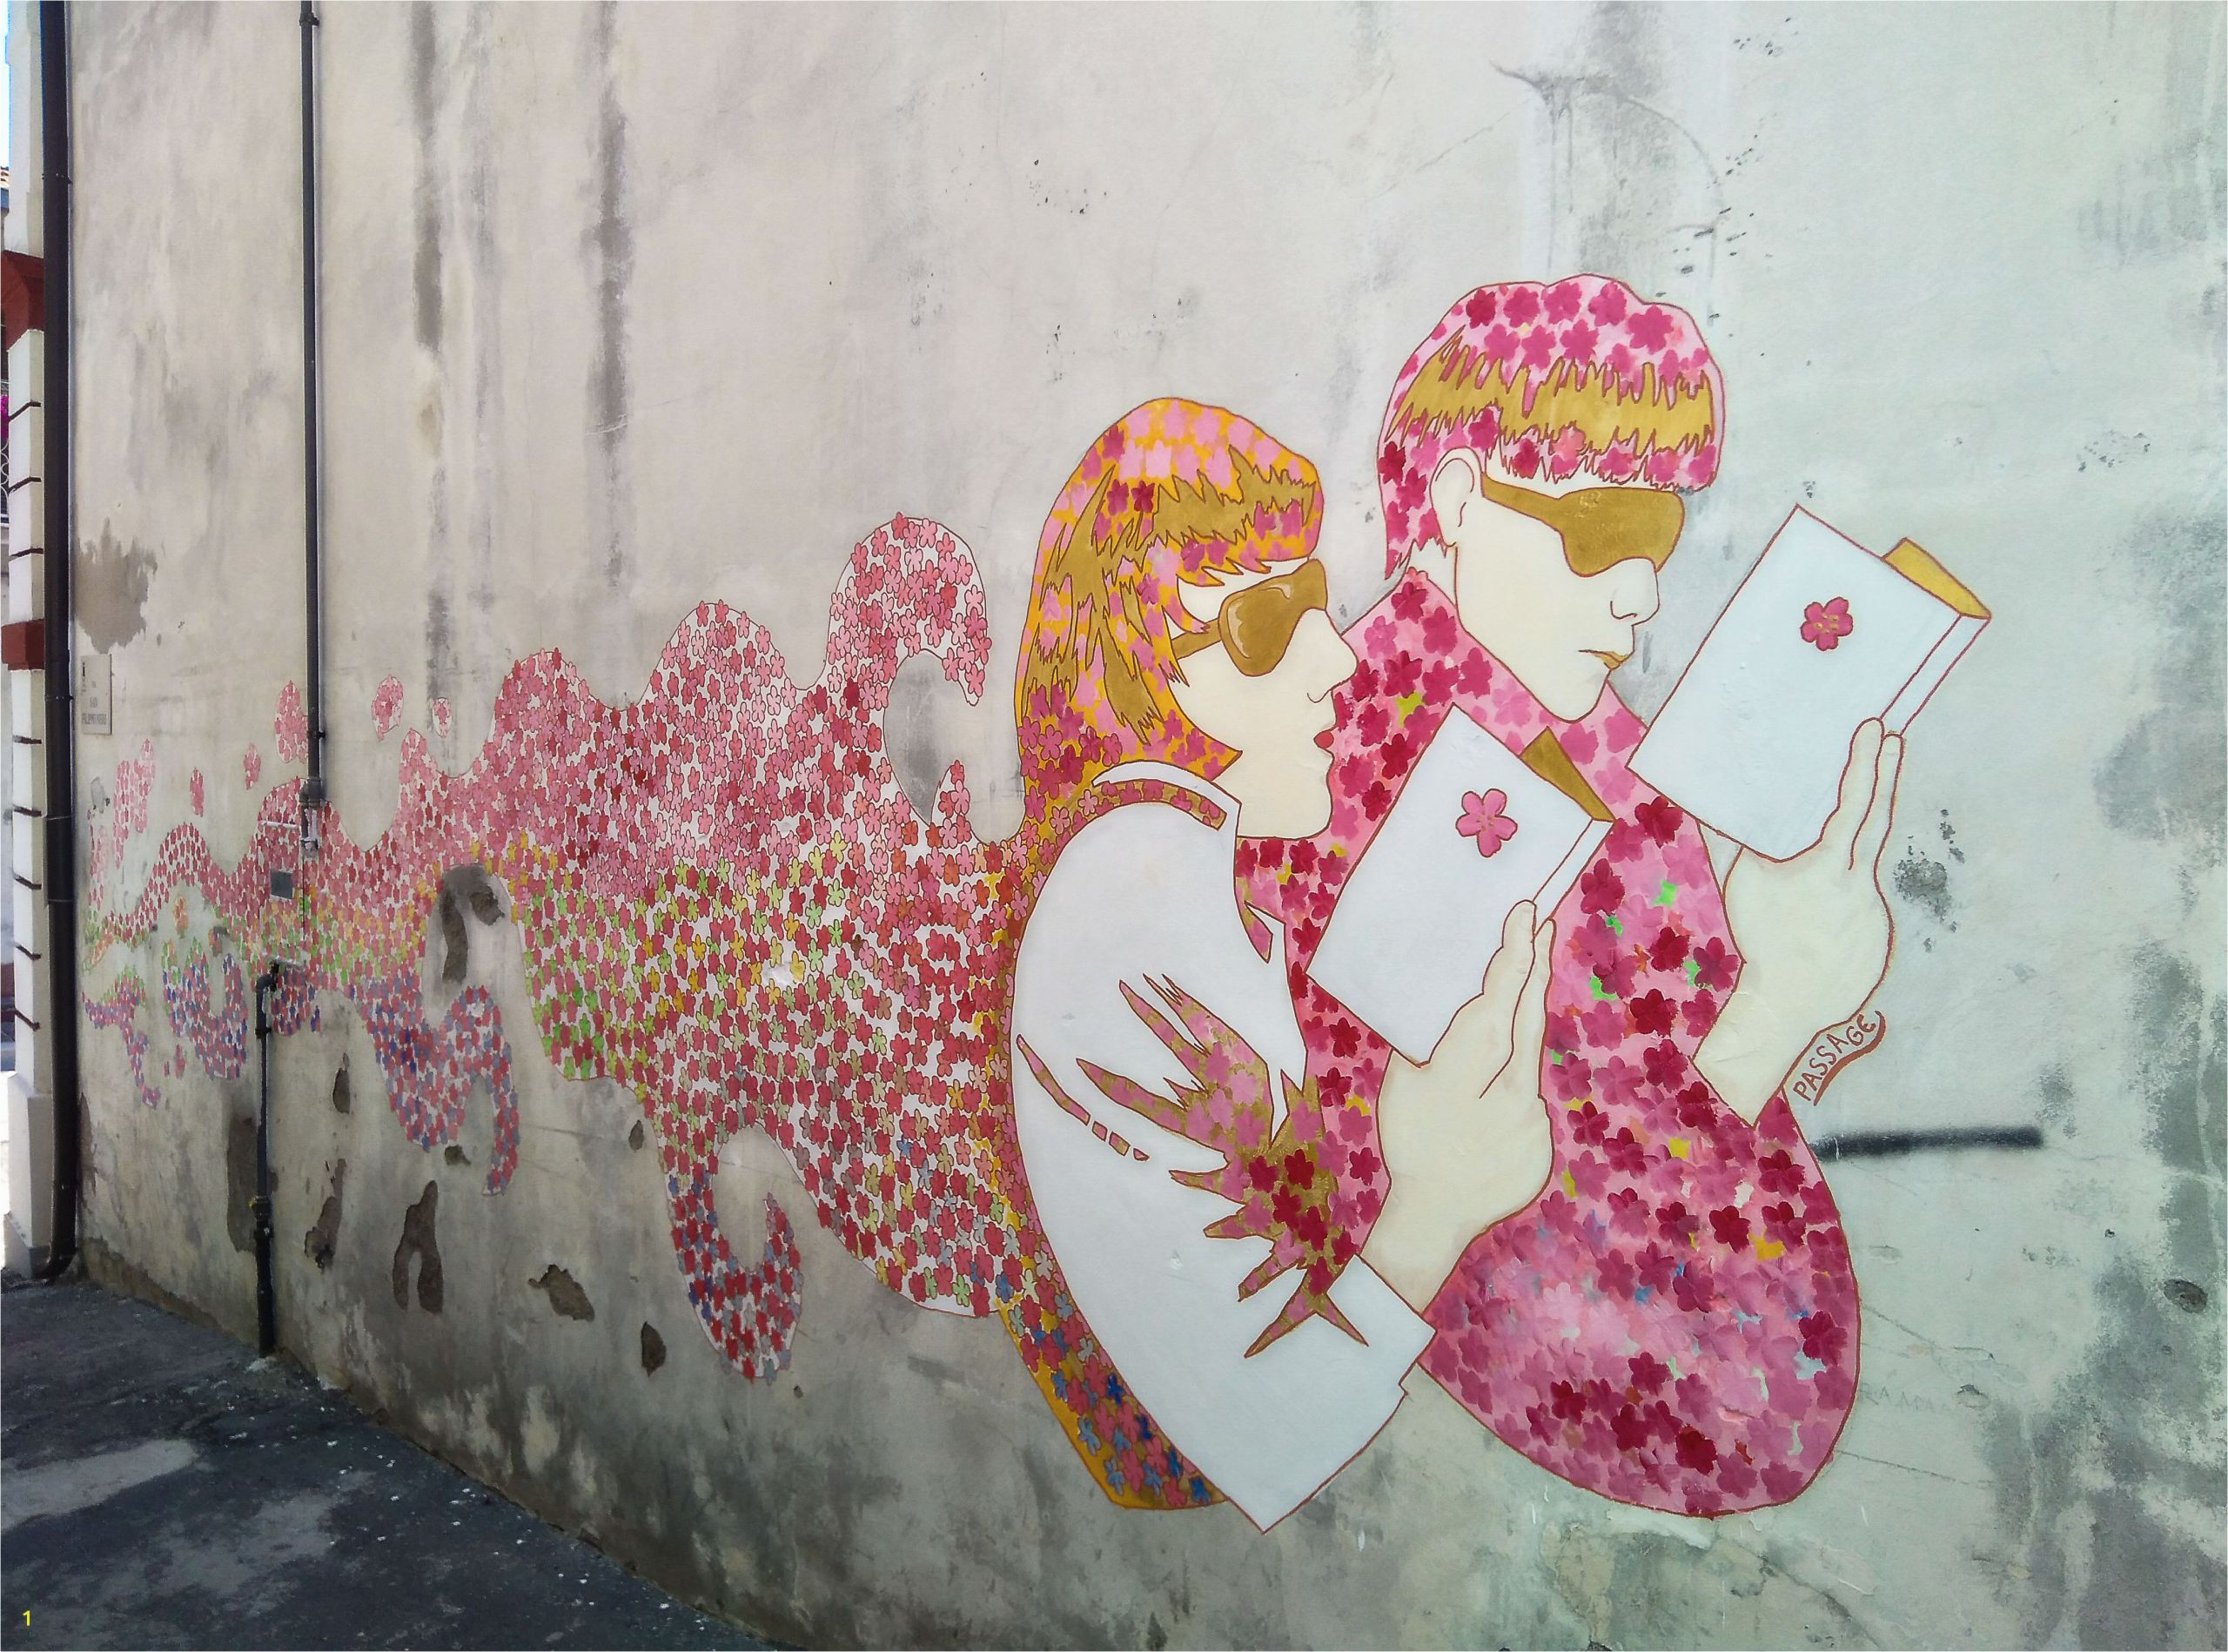 Wall Mural Pop Art View Of Ukiyo E Between Pop Art and Trans Cultural